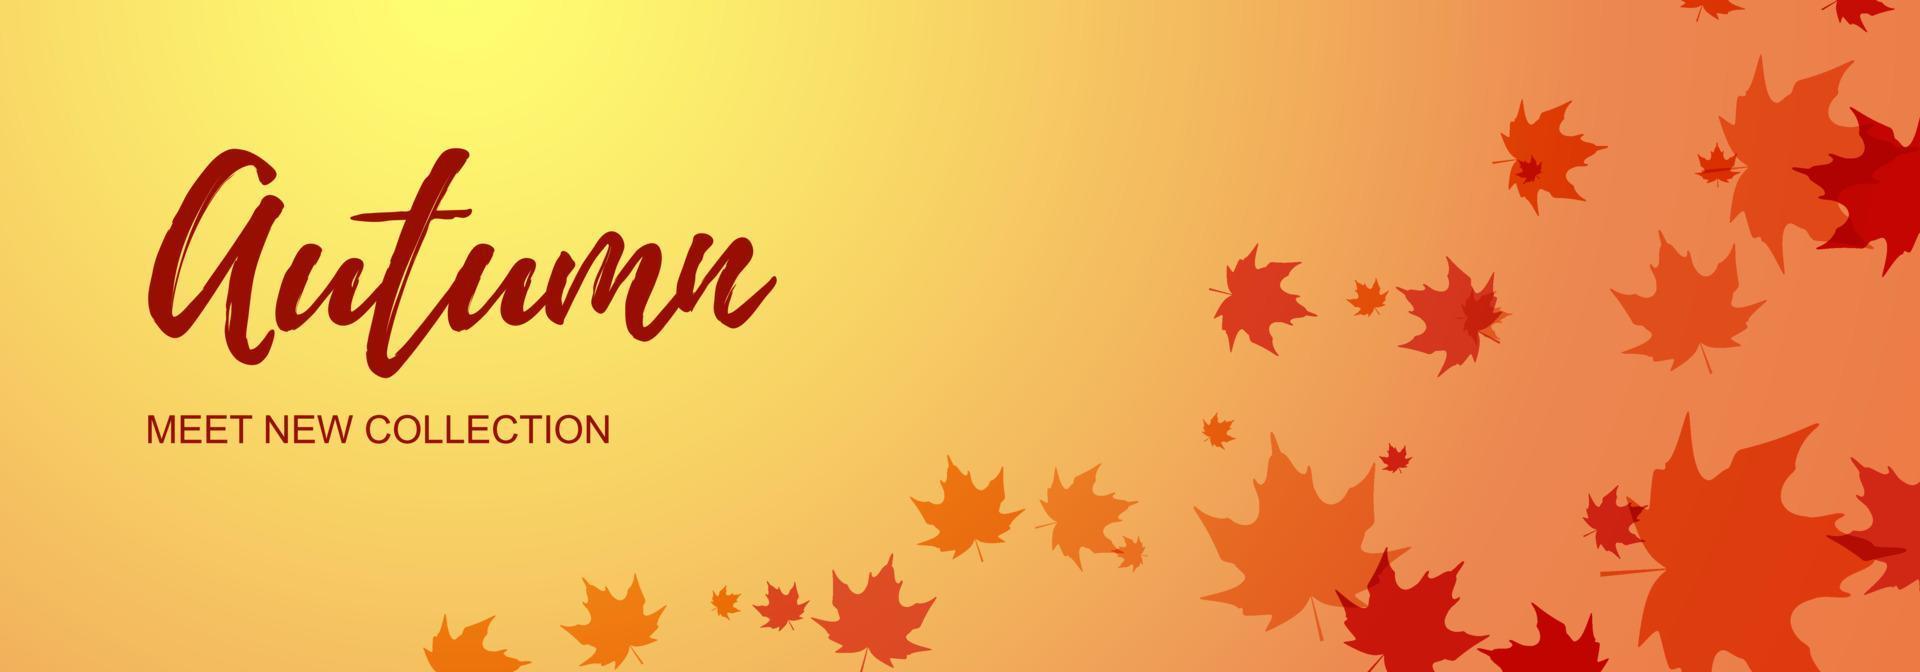 banner horizontal de outono com folhas de plátano. lugar para texto. ilustração vetorial vetor